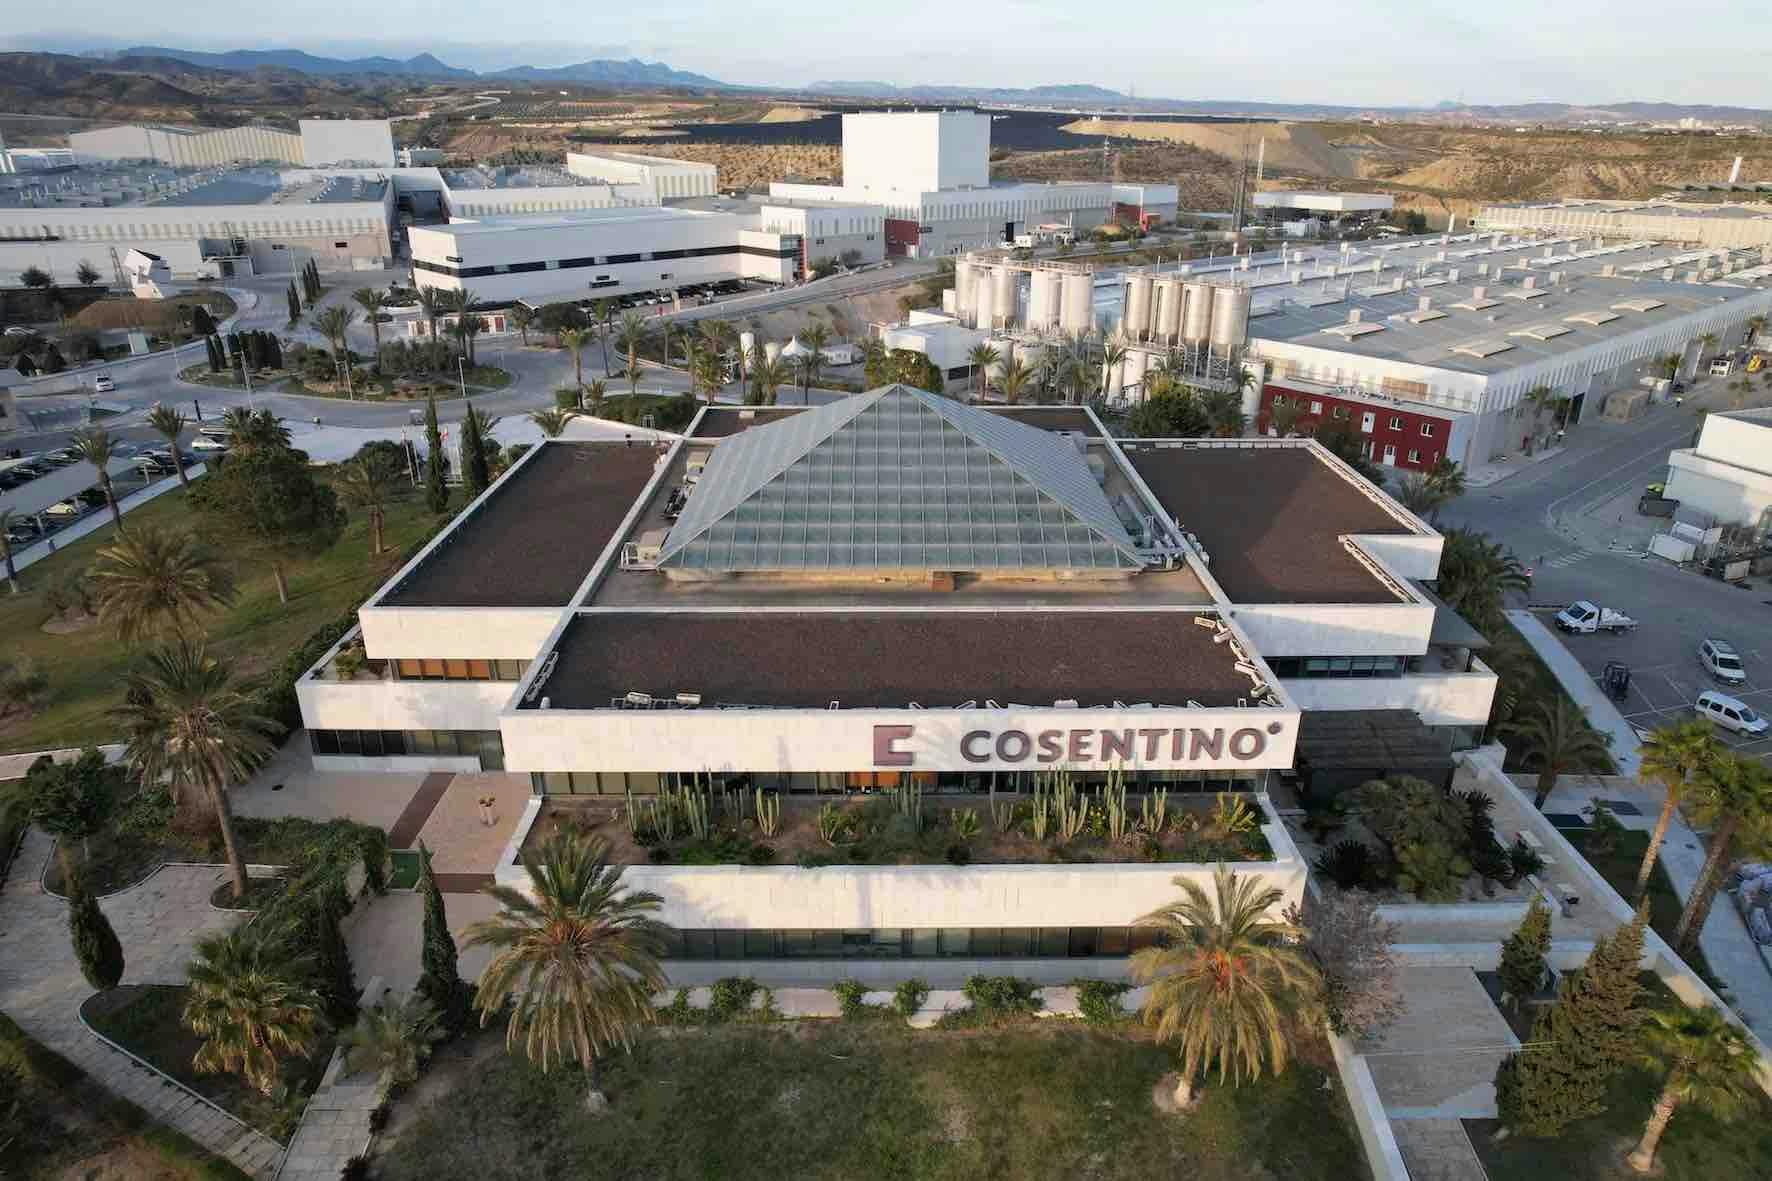 Image 91 of Parque Industrial Cosentino vista aerea oficinas d 1.jpg?auto=format%2Ccompress&ixlib=php 3.3 in Inspiration - Cosentino